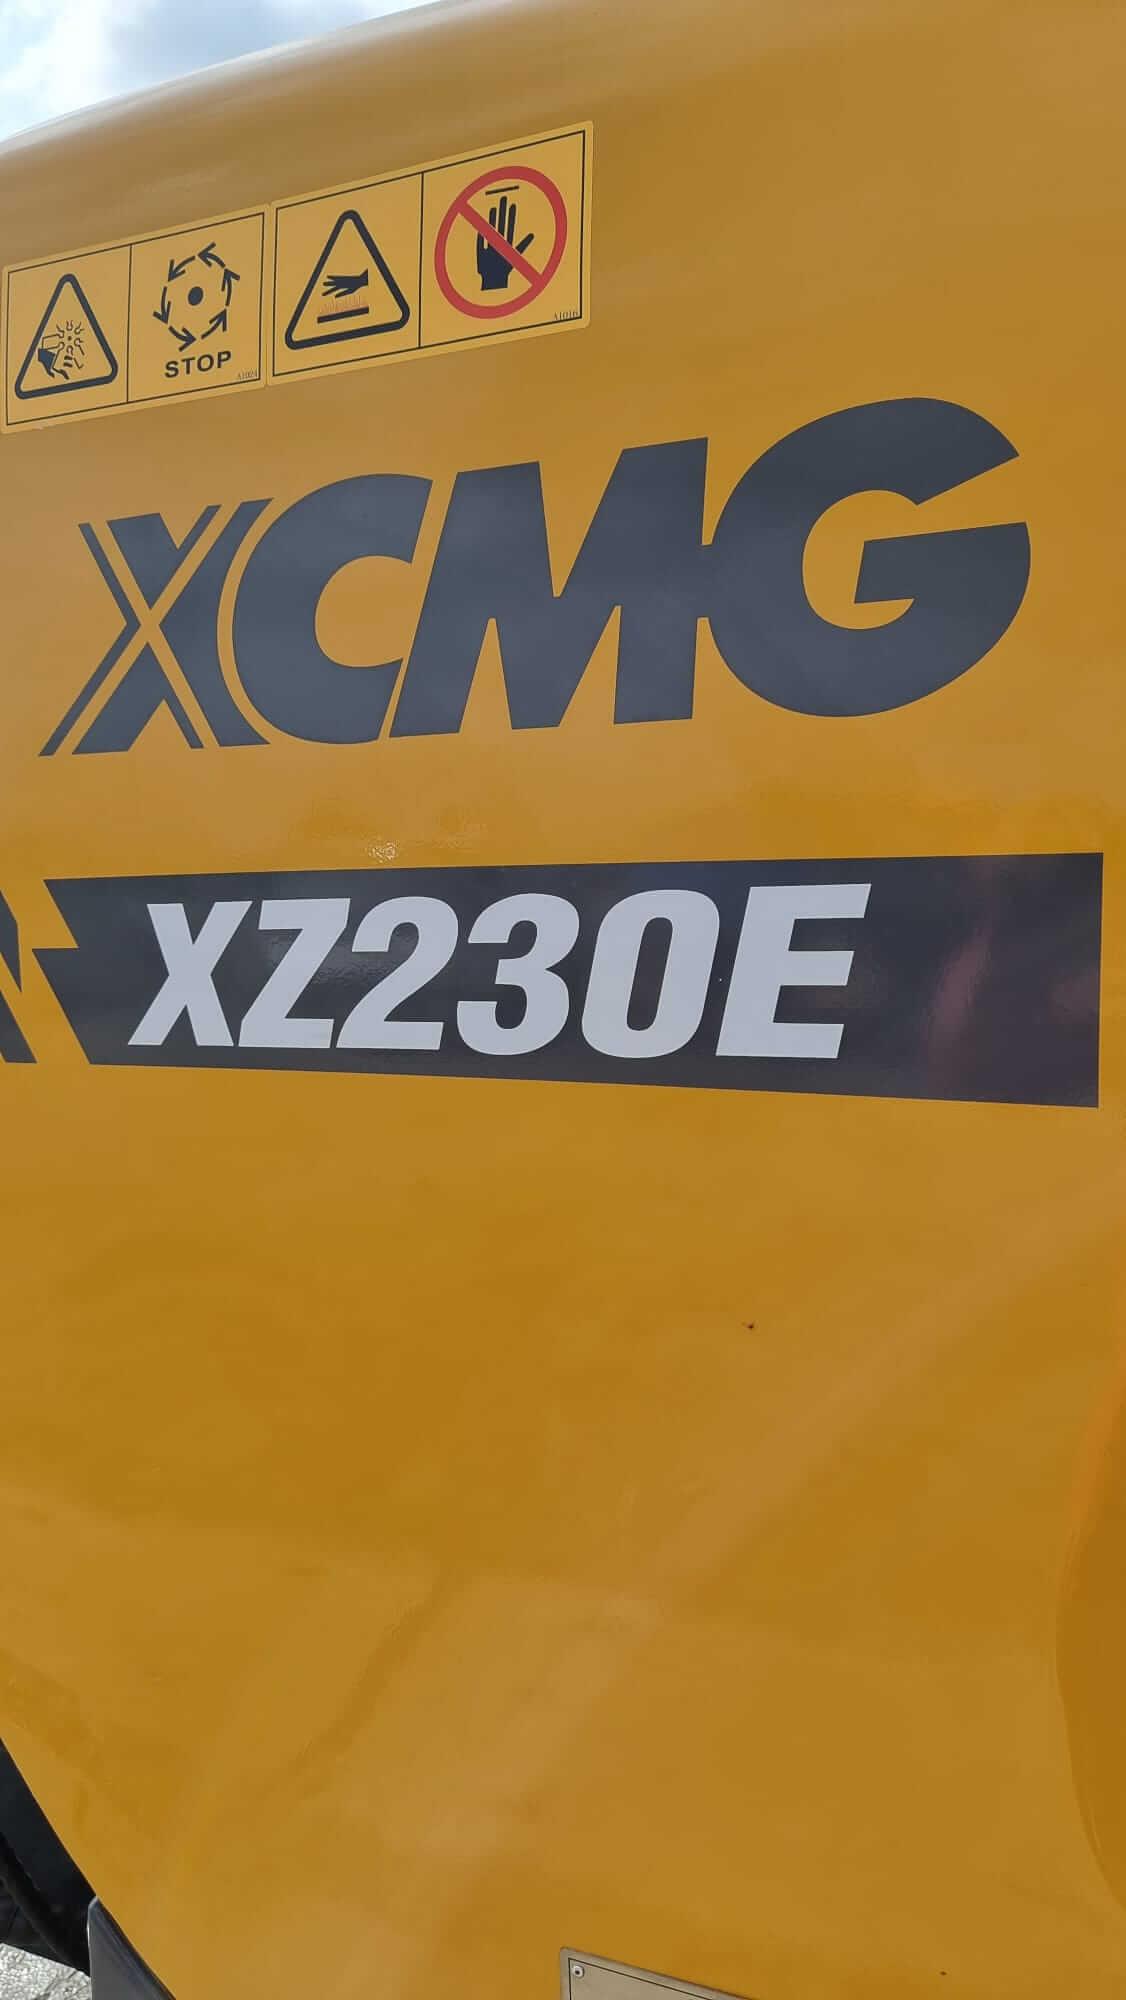 XCMG XZ230E